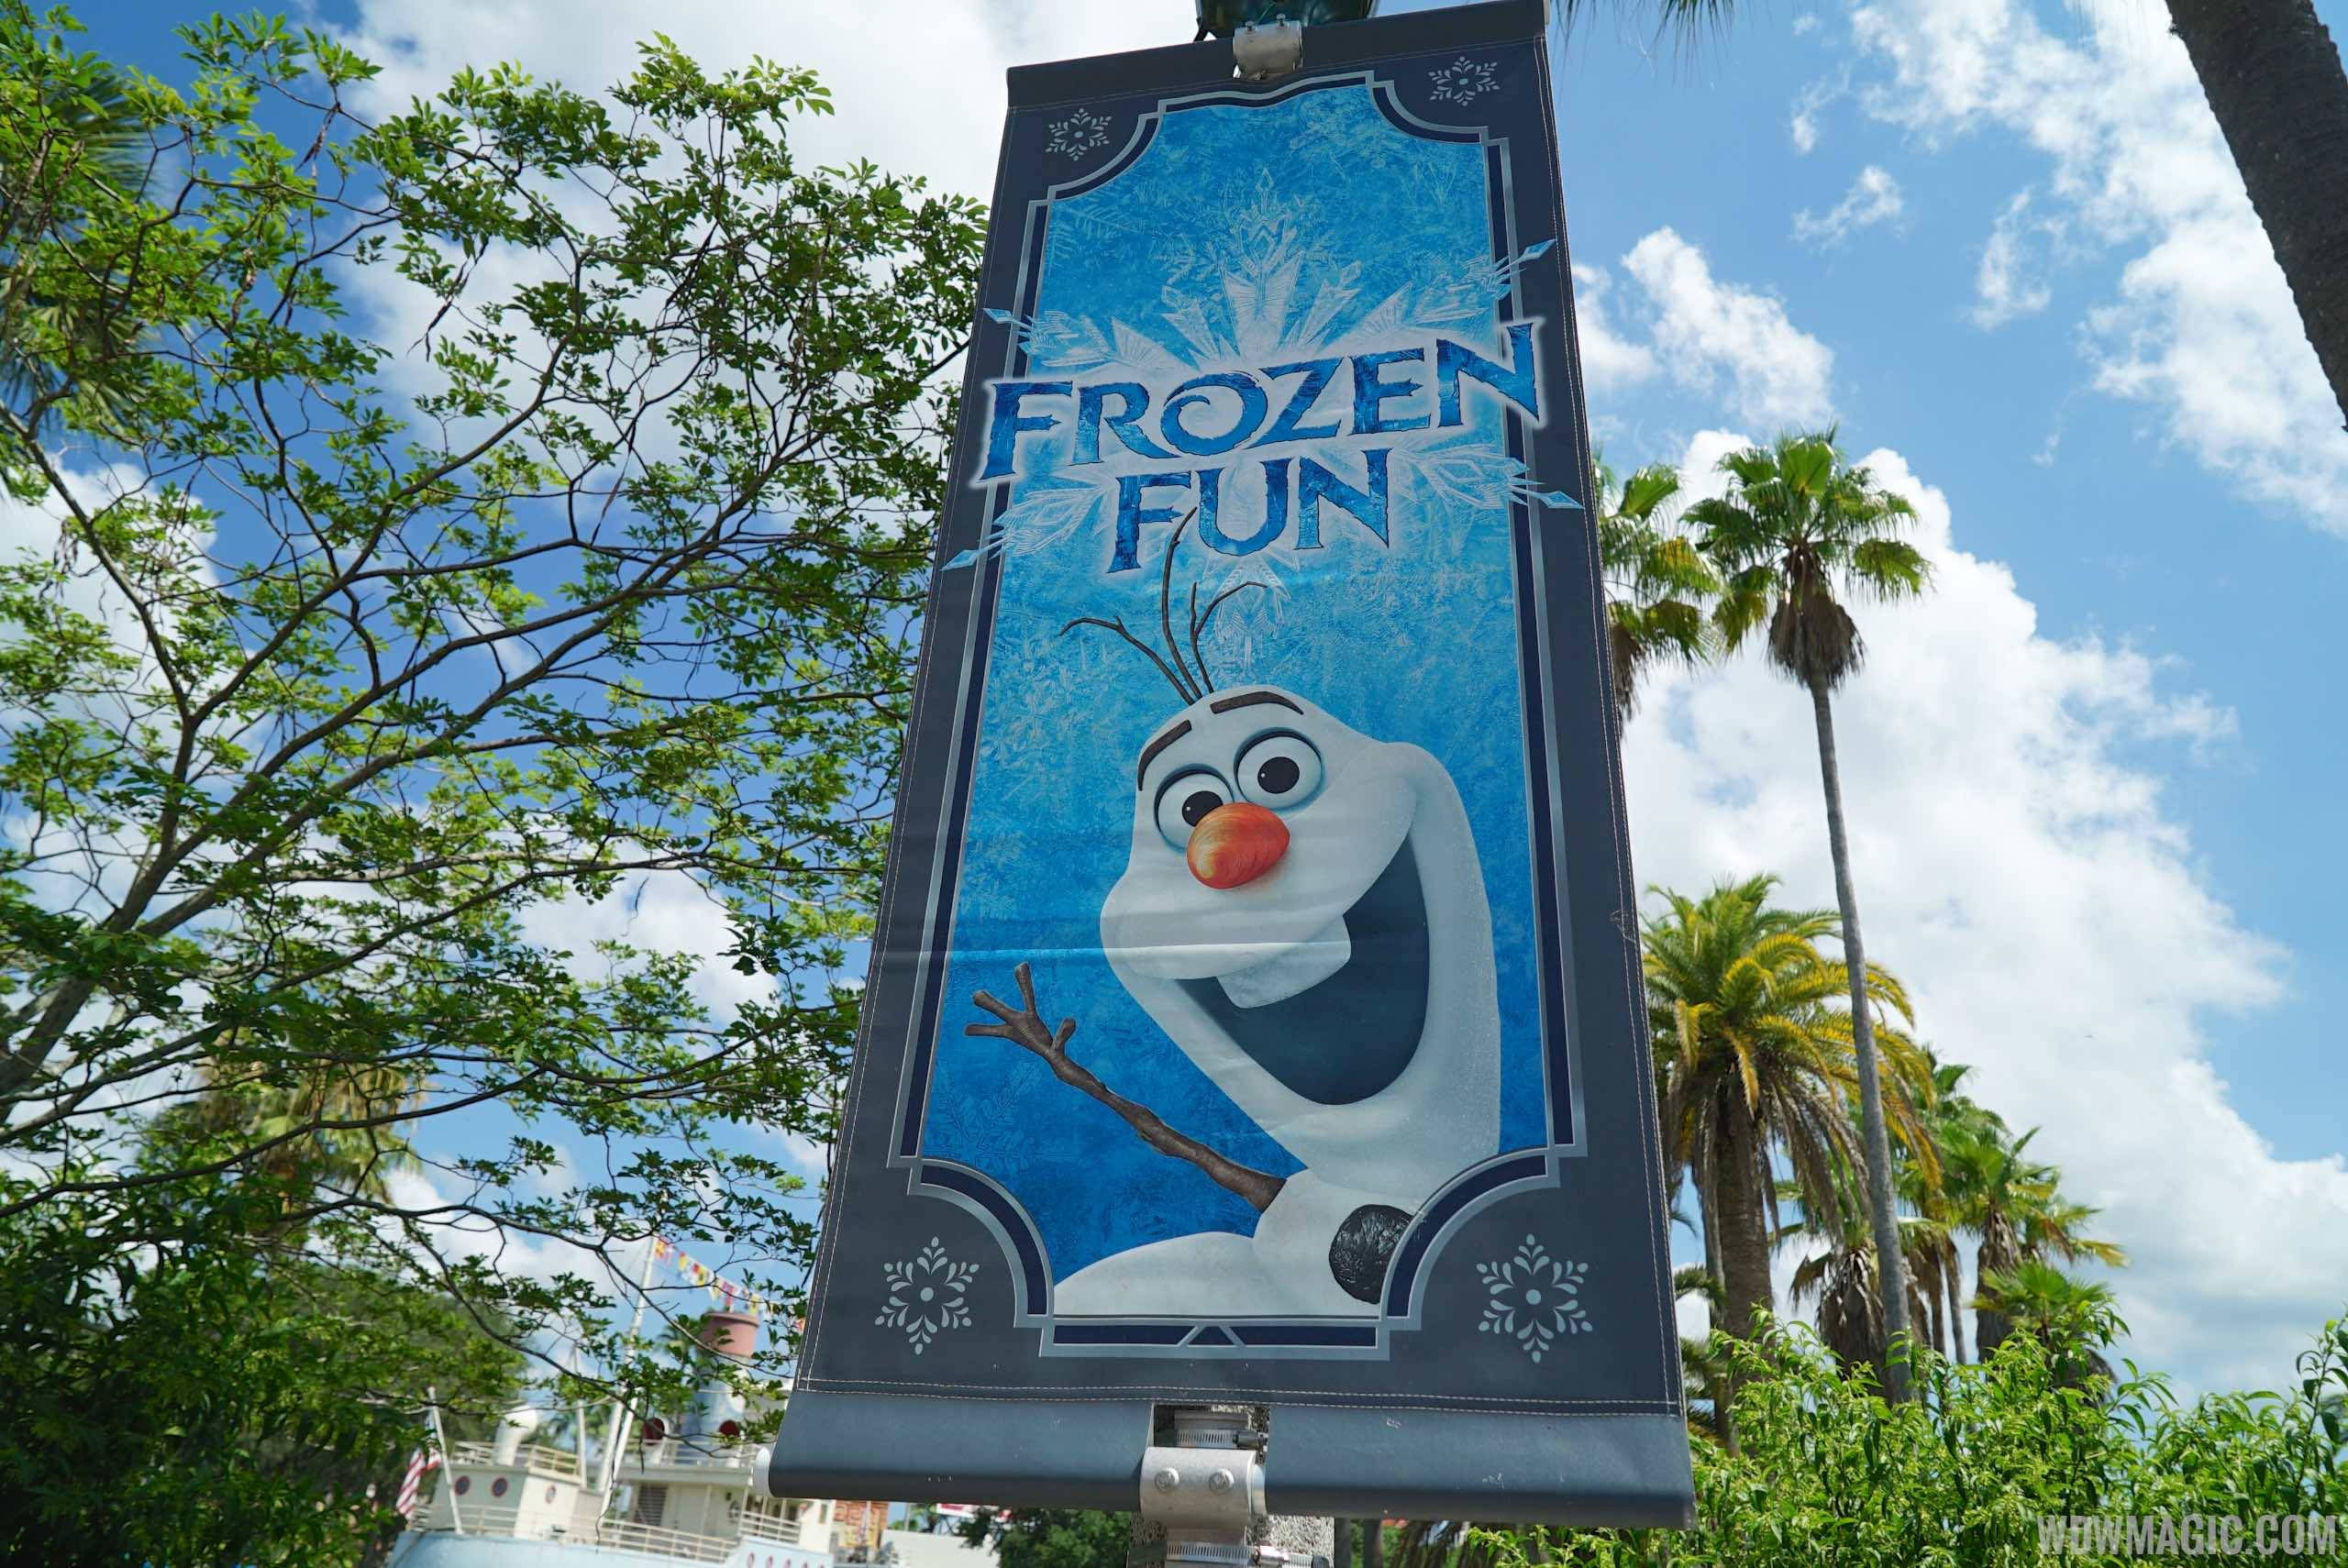 Frozen Summer Fun Premium Package tickets now on sale